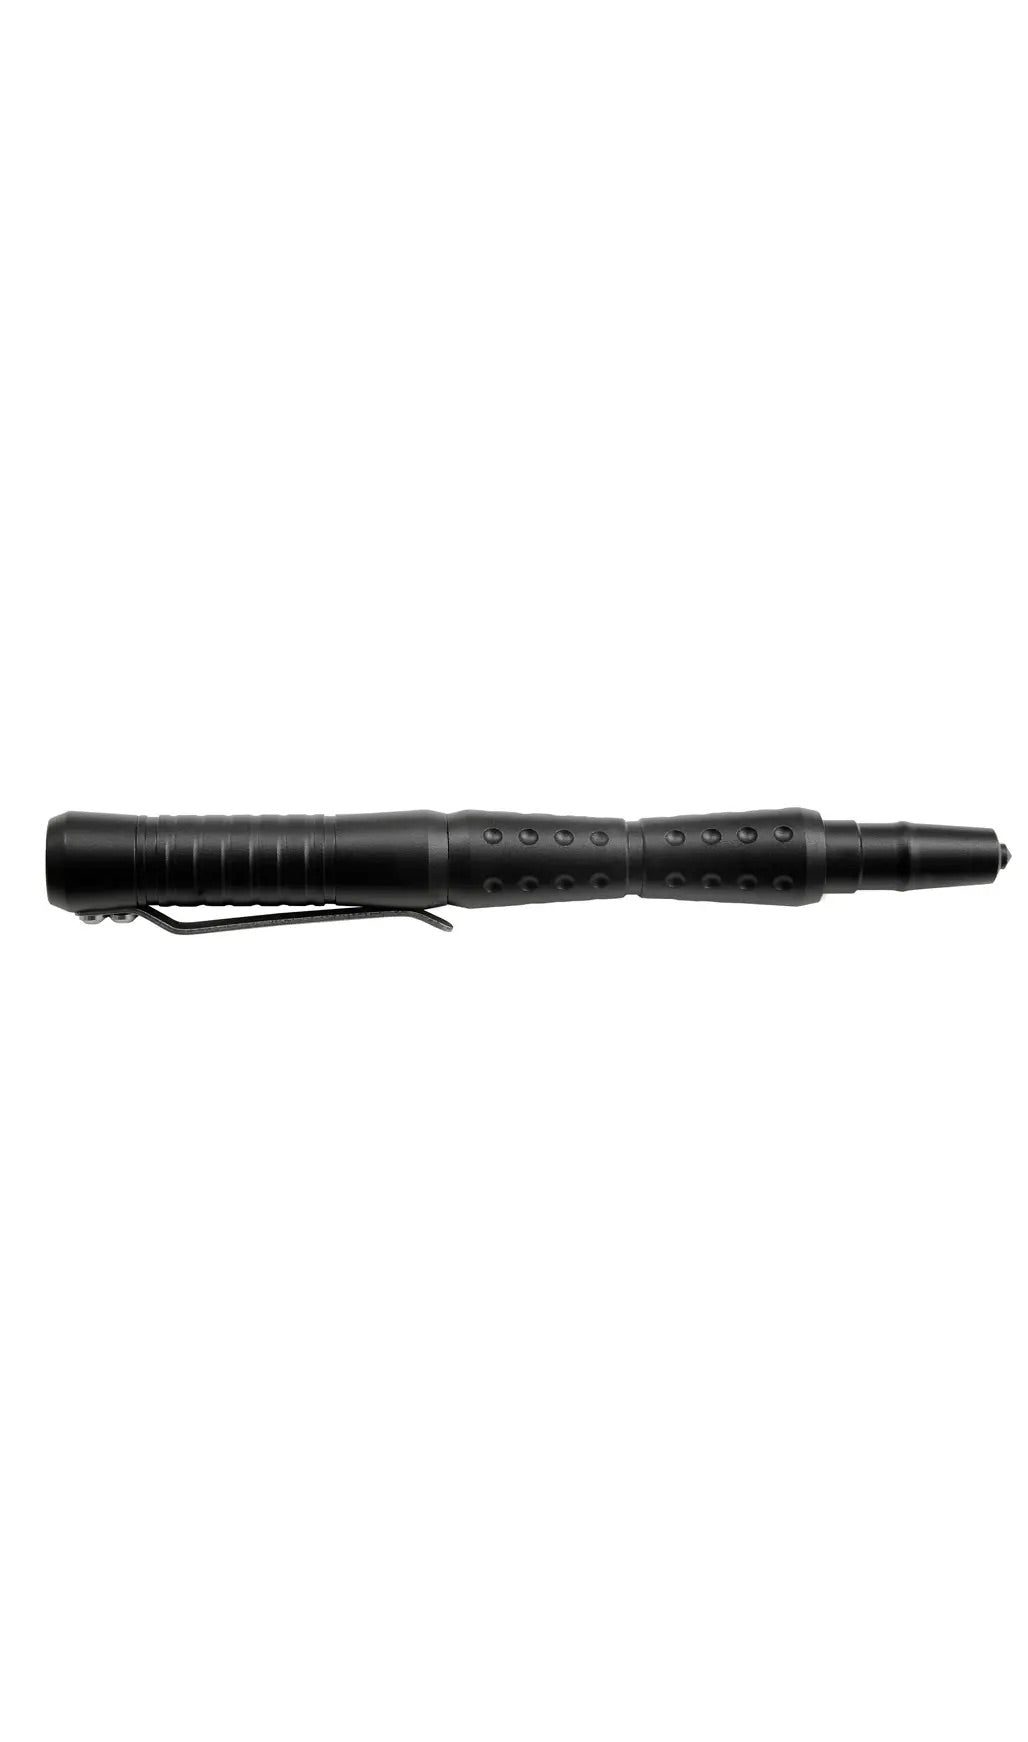 UZI Tactical Pen 19 | Black